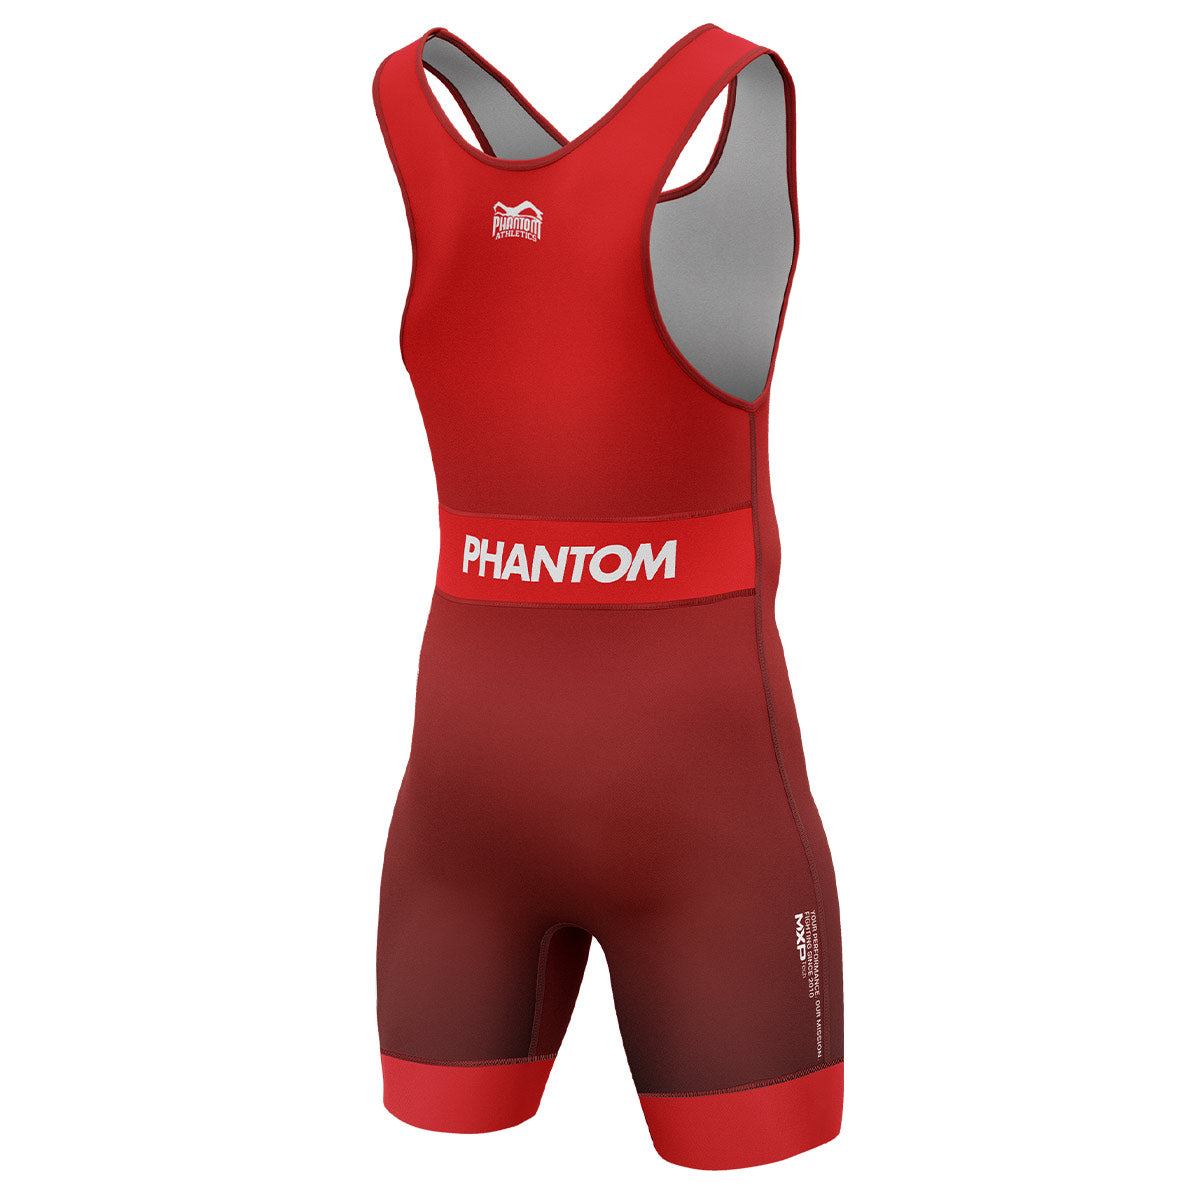 Phantom Ringertrikot Apex in der Farbe Rot. Ideal für Training und Wettkampf. Gefertigt nach offiziellen UWW Richtlinien.